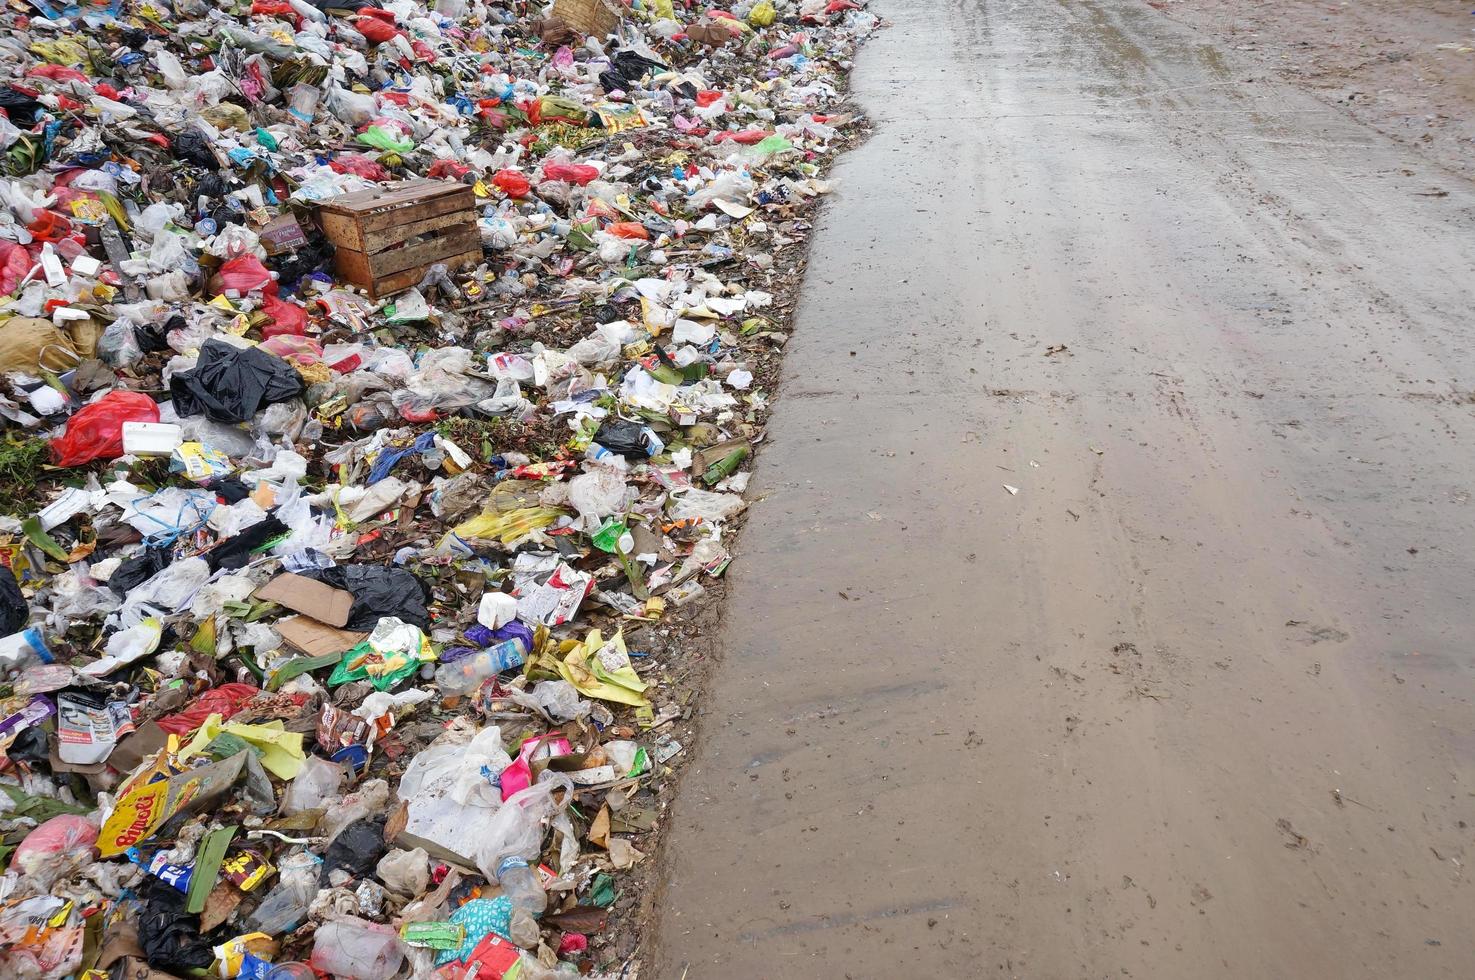 sangatta, oosten- kalimantaan, Indonesië - 03 augustus 2020 - stapel van huiselijk vuilnis in stortplaats dump plaats. foto